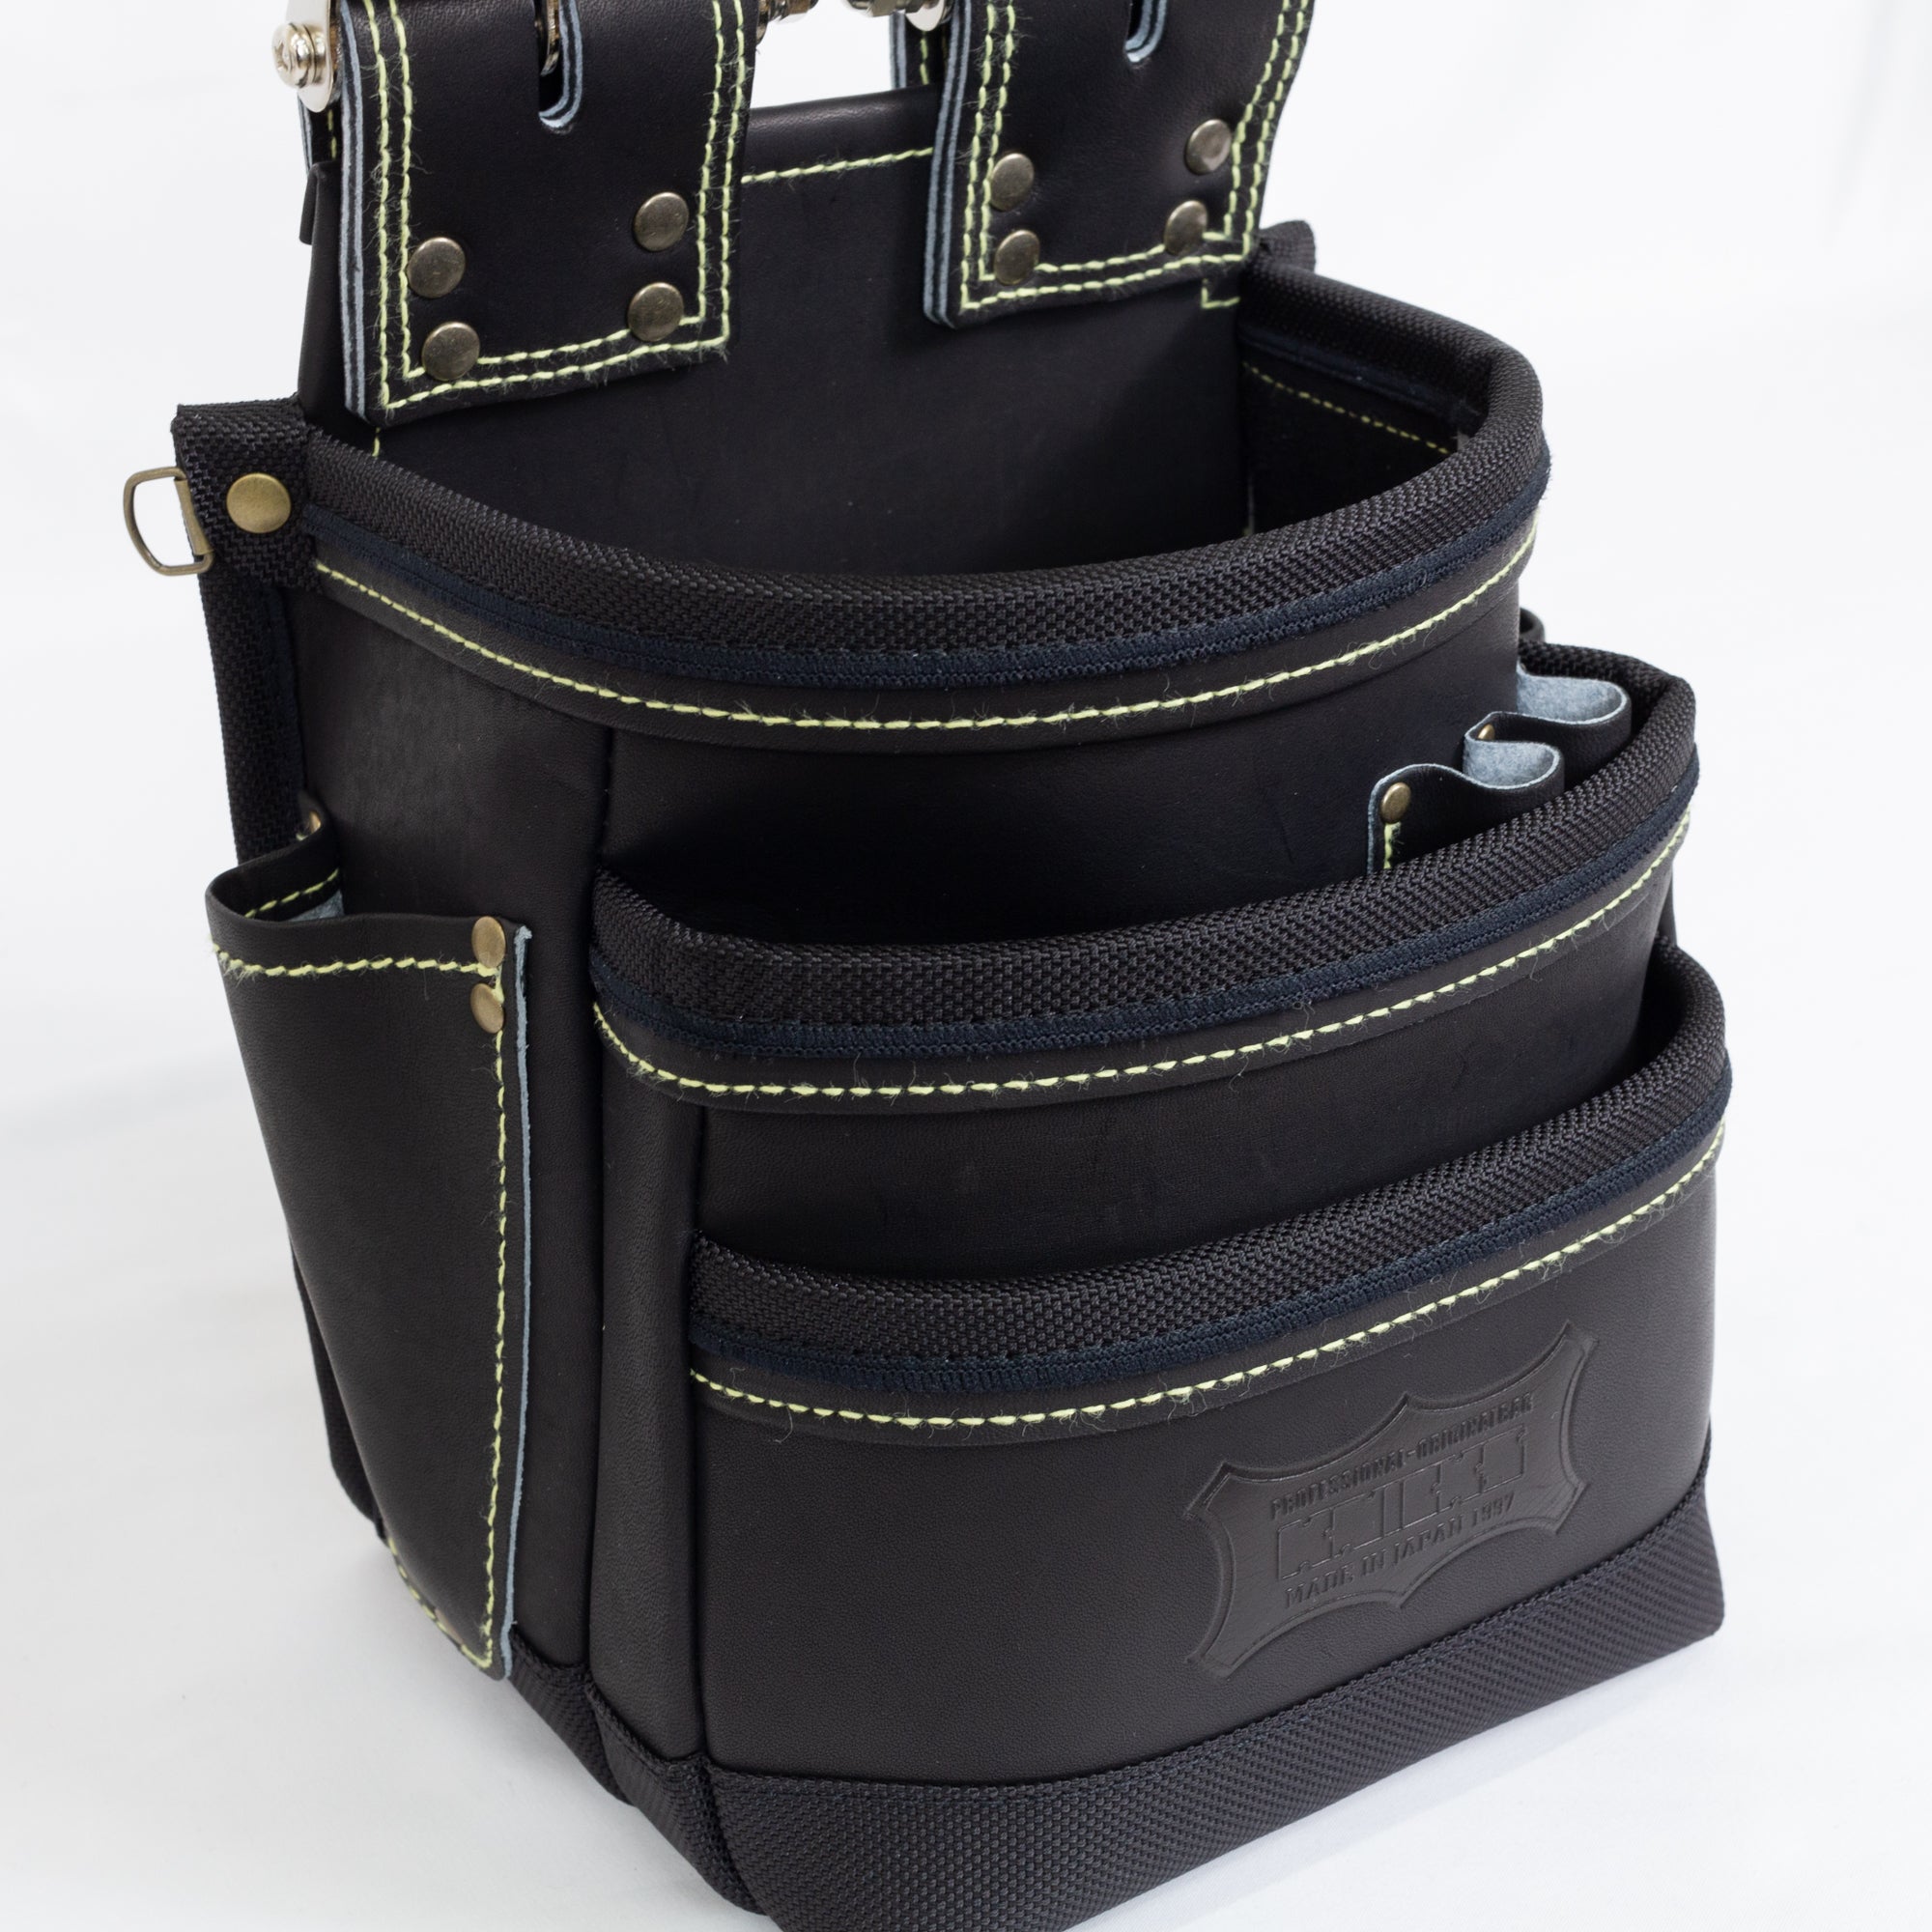 ニックス腰袋 最高級硬式グローブ革チェーンタイプ3段腰袋KGB-301DDX-